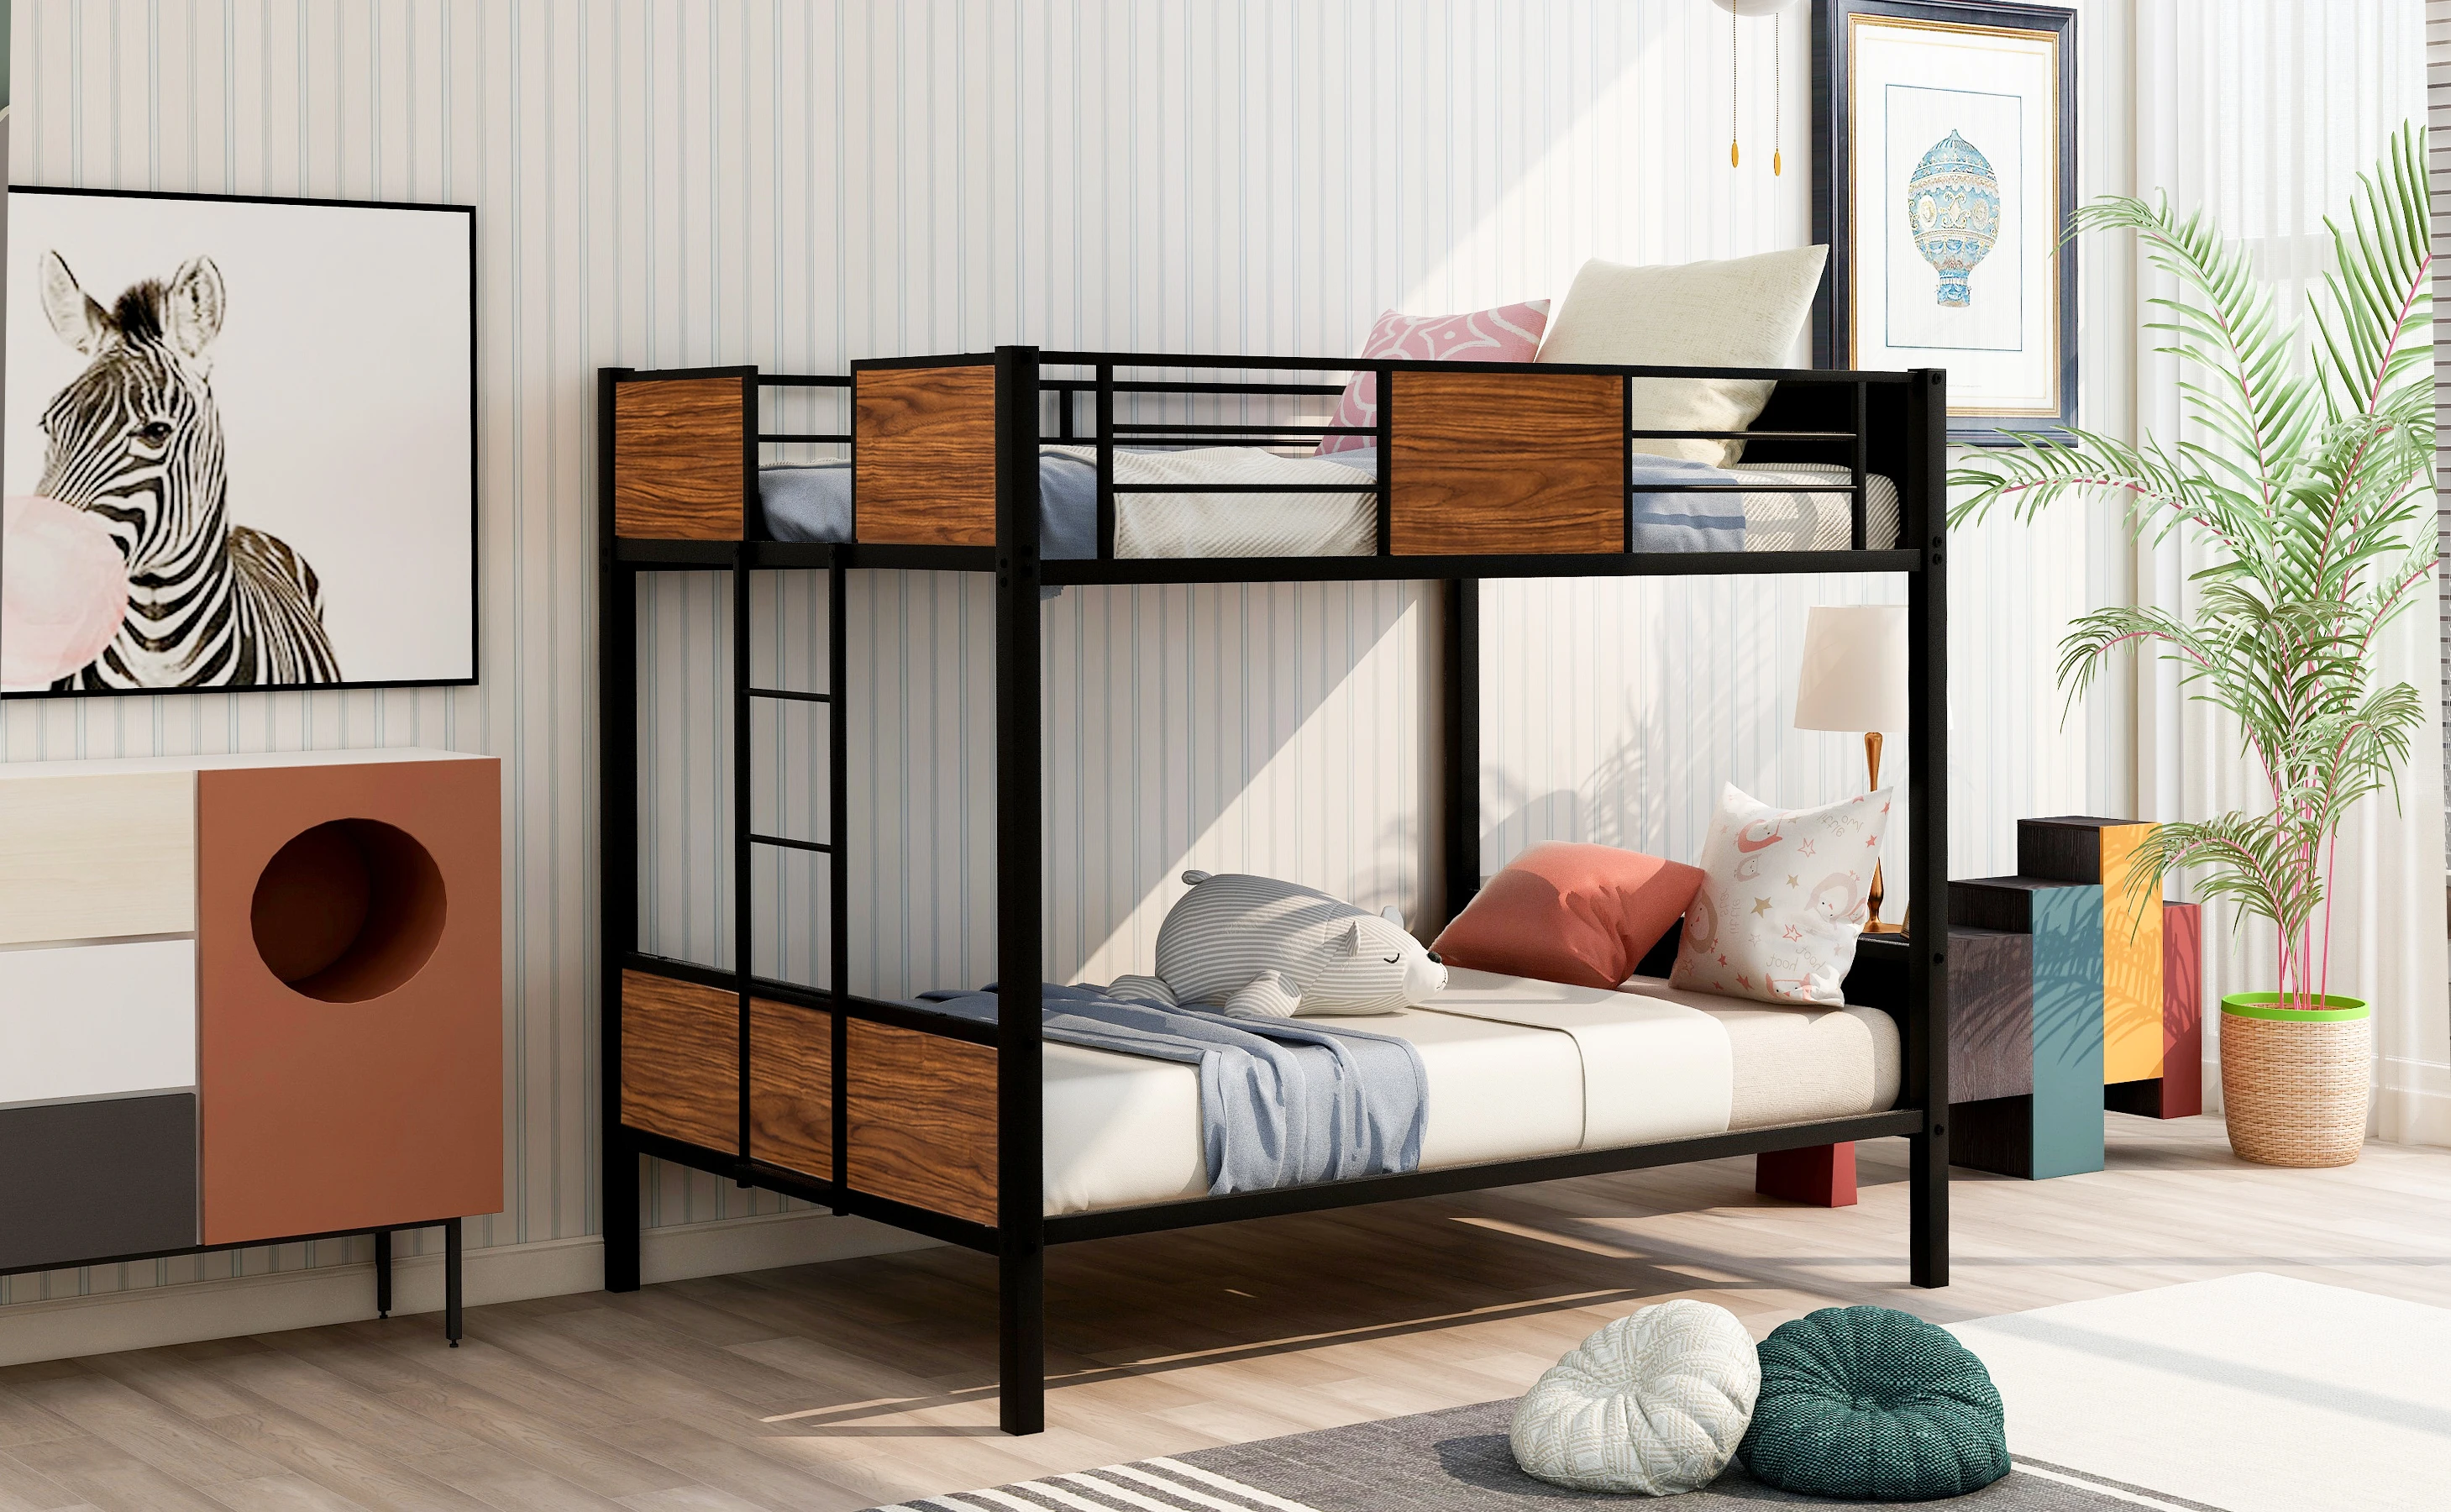 

Полноразмерная двухъярусная кровать в современном стиле, двухъярусная кровать со стальной рамой и безопасной рейкой, встроенная лестница для спальни